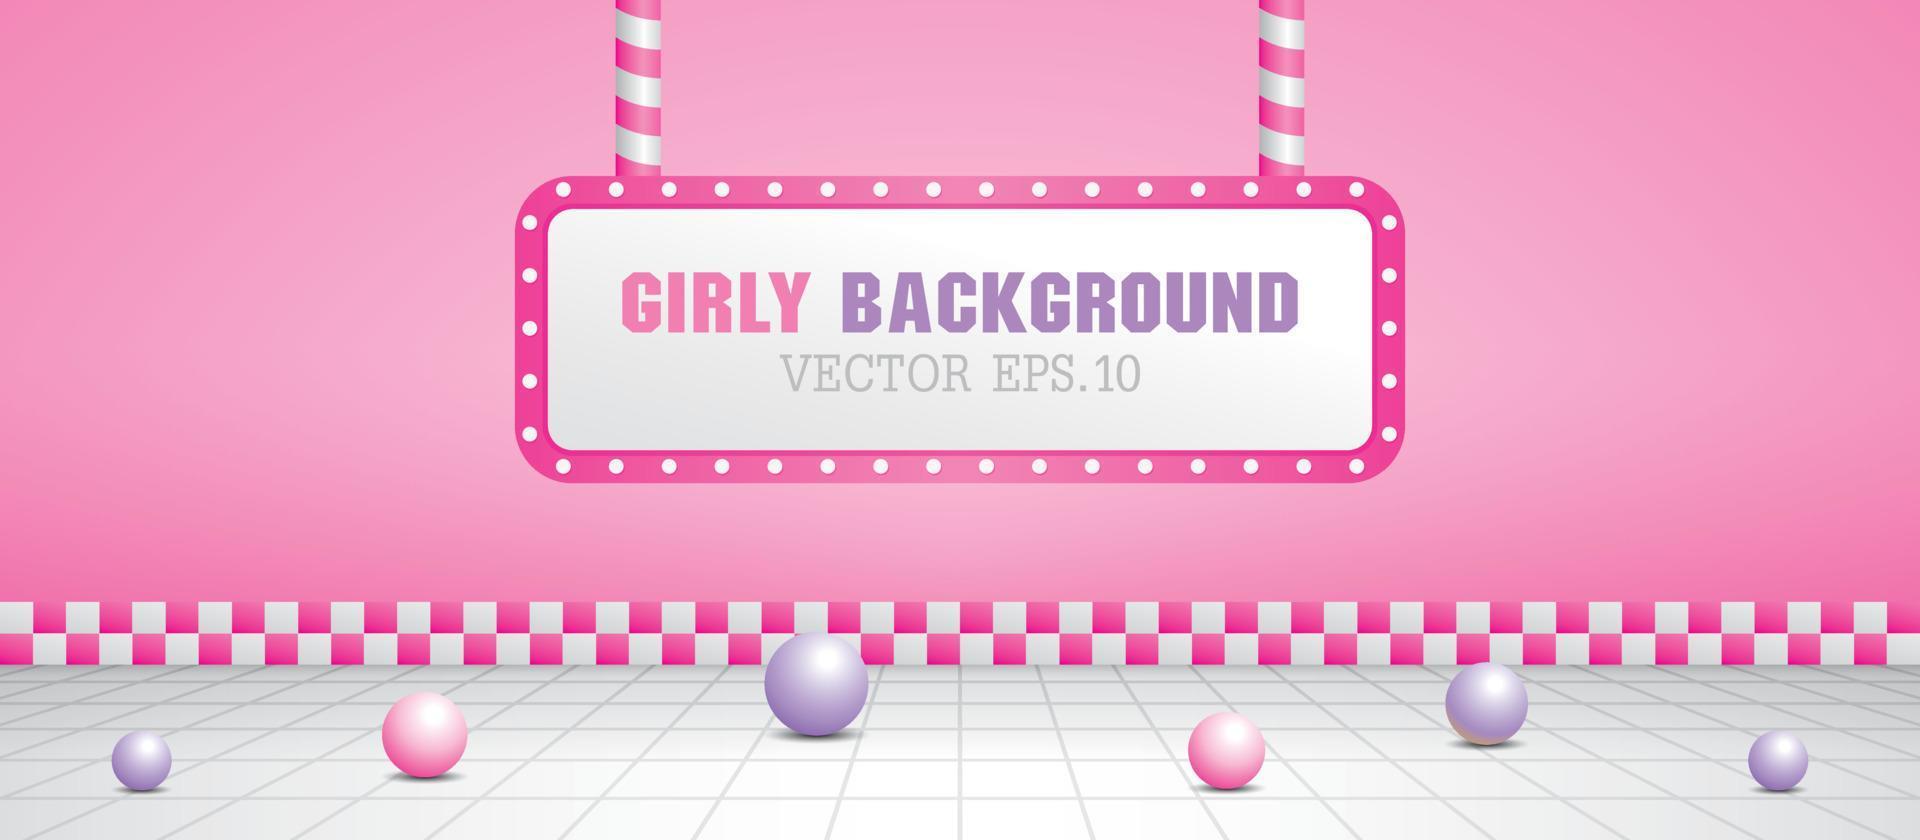 girly roze scène met gloeilamp in retro stijl 3d illustratie vector. vector